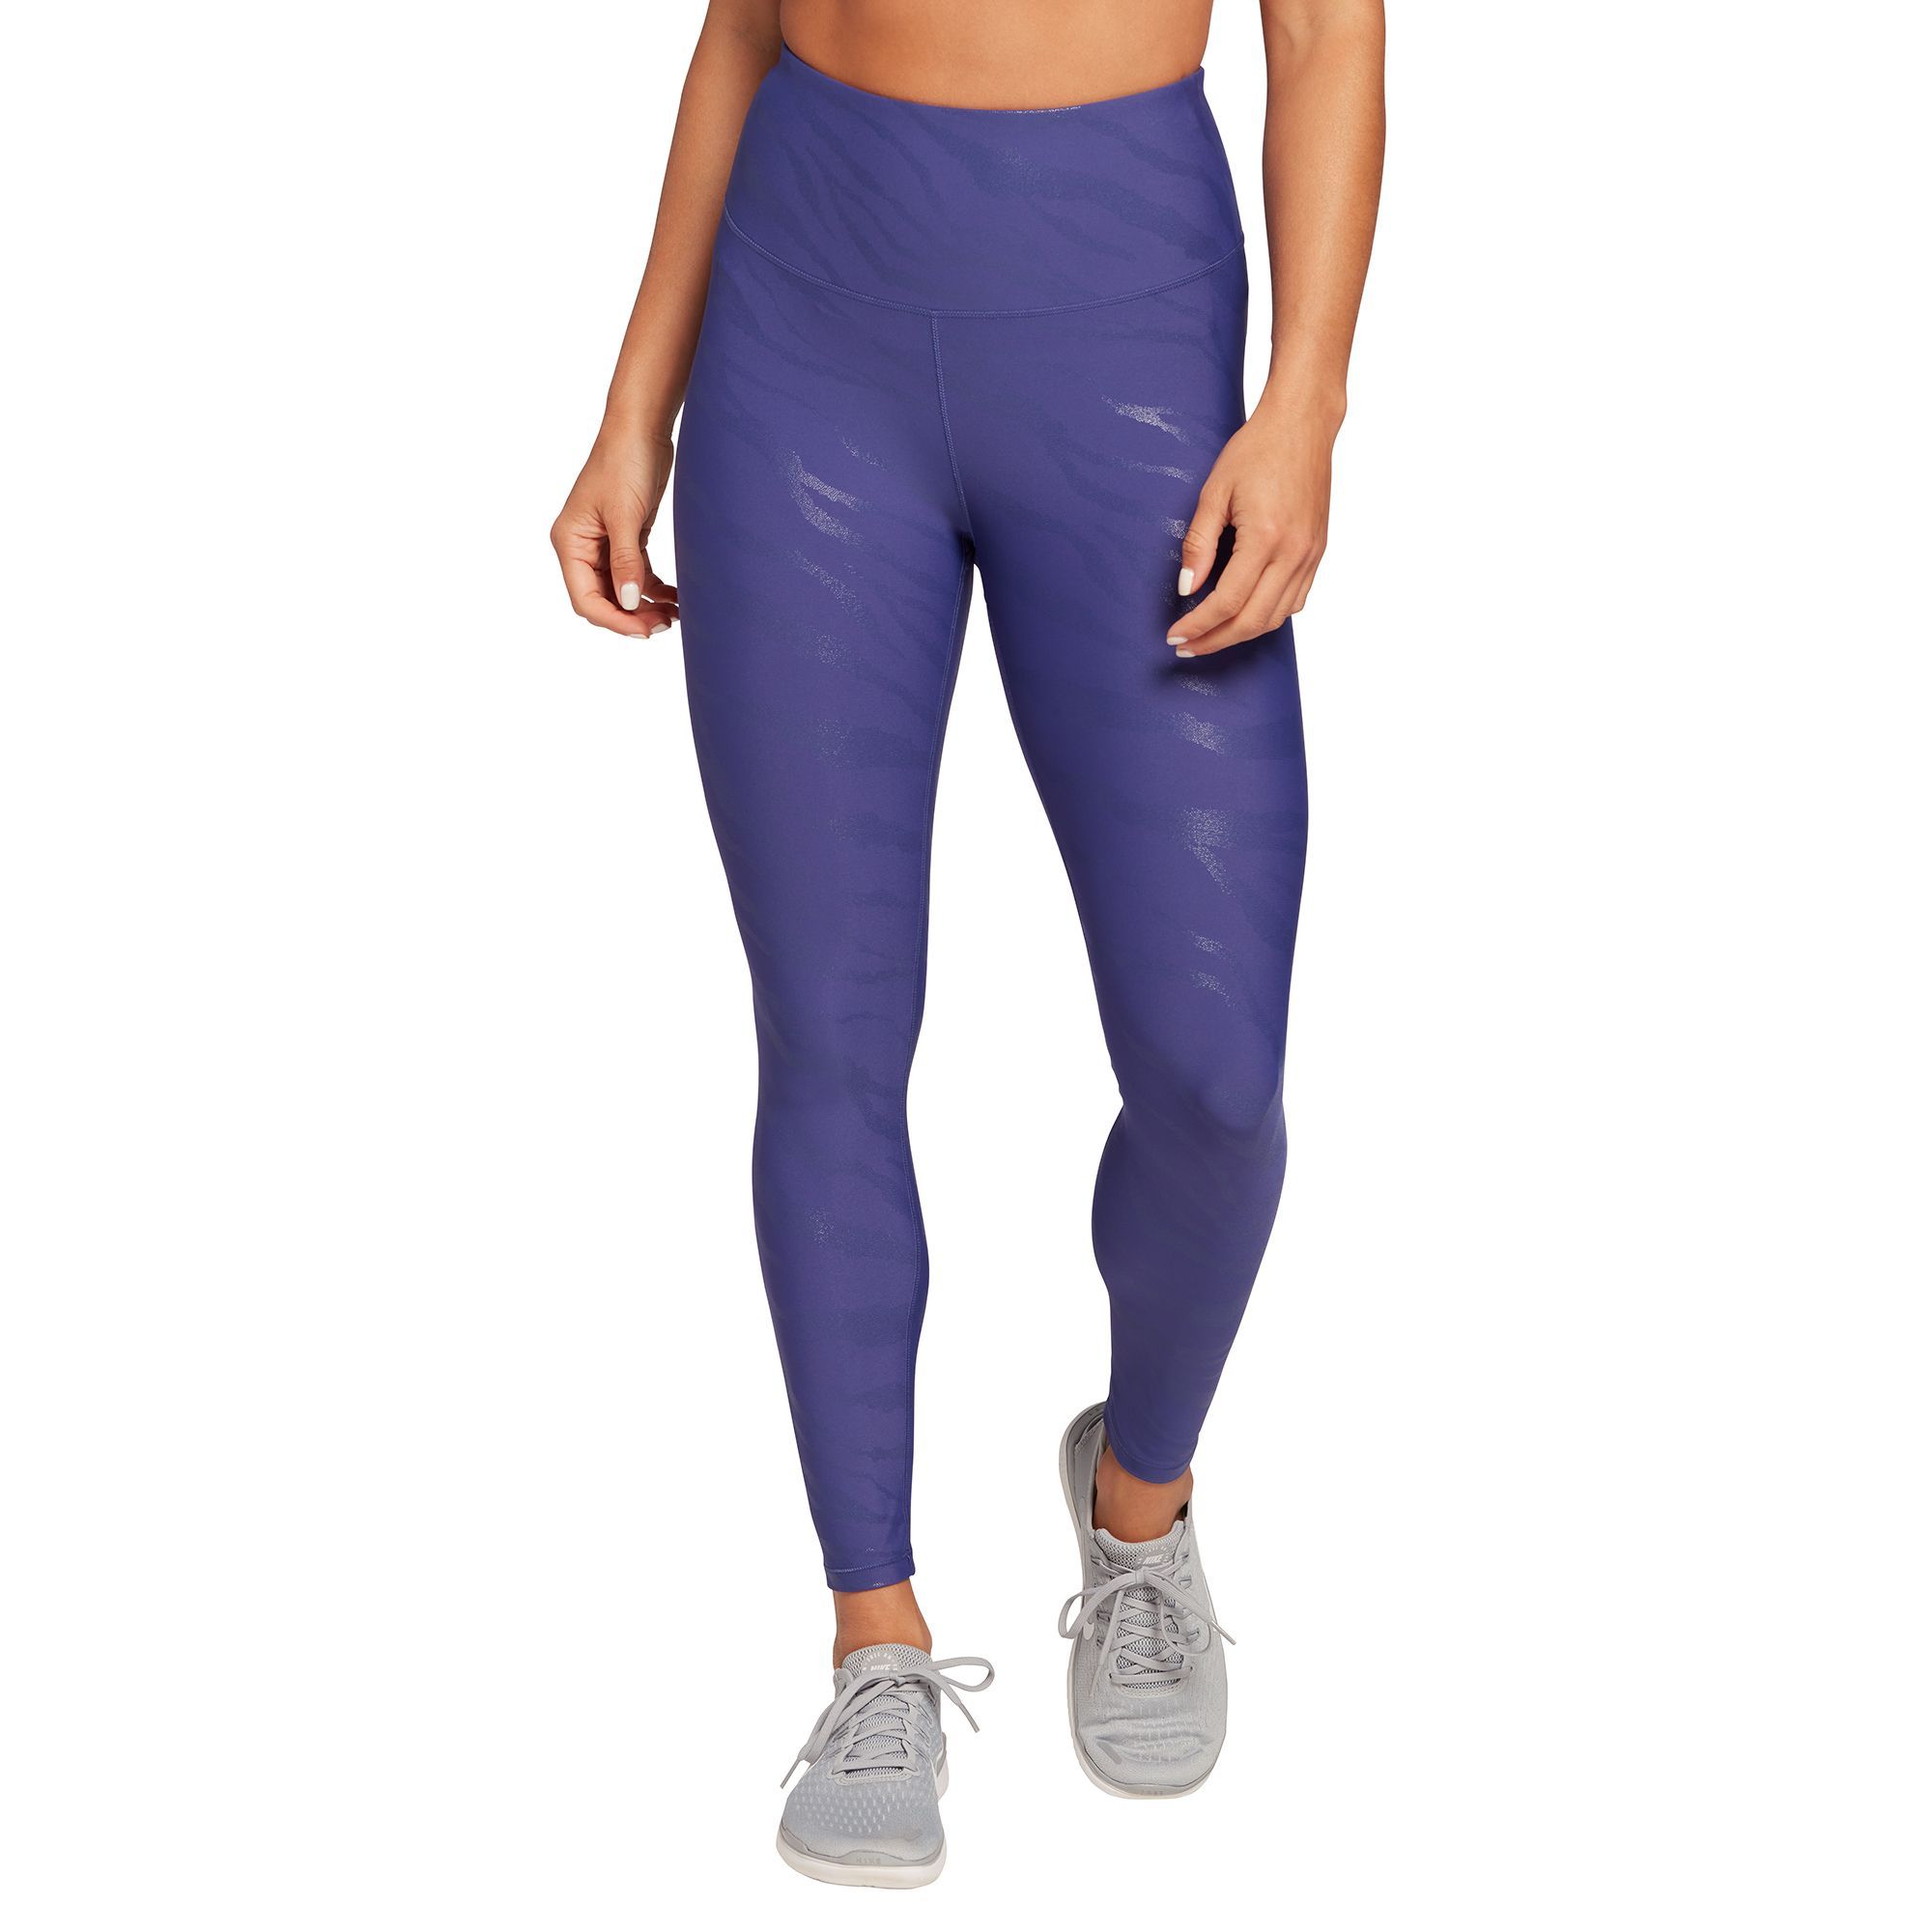 CALIA Women's Foil Energize 7/8 Leggings, Medium, Blue | Dick's Sporting Goods